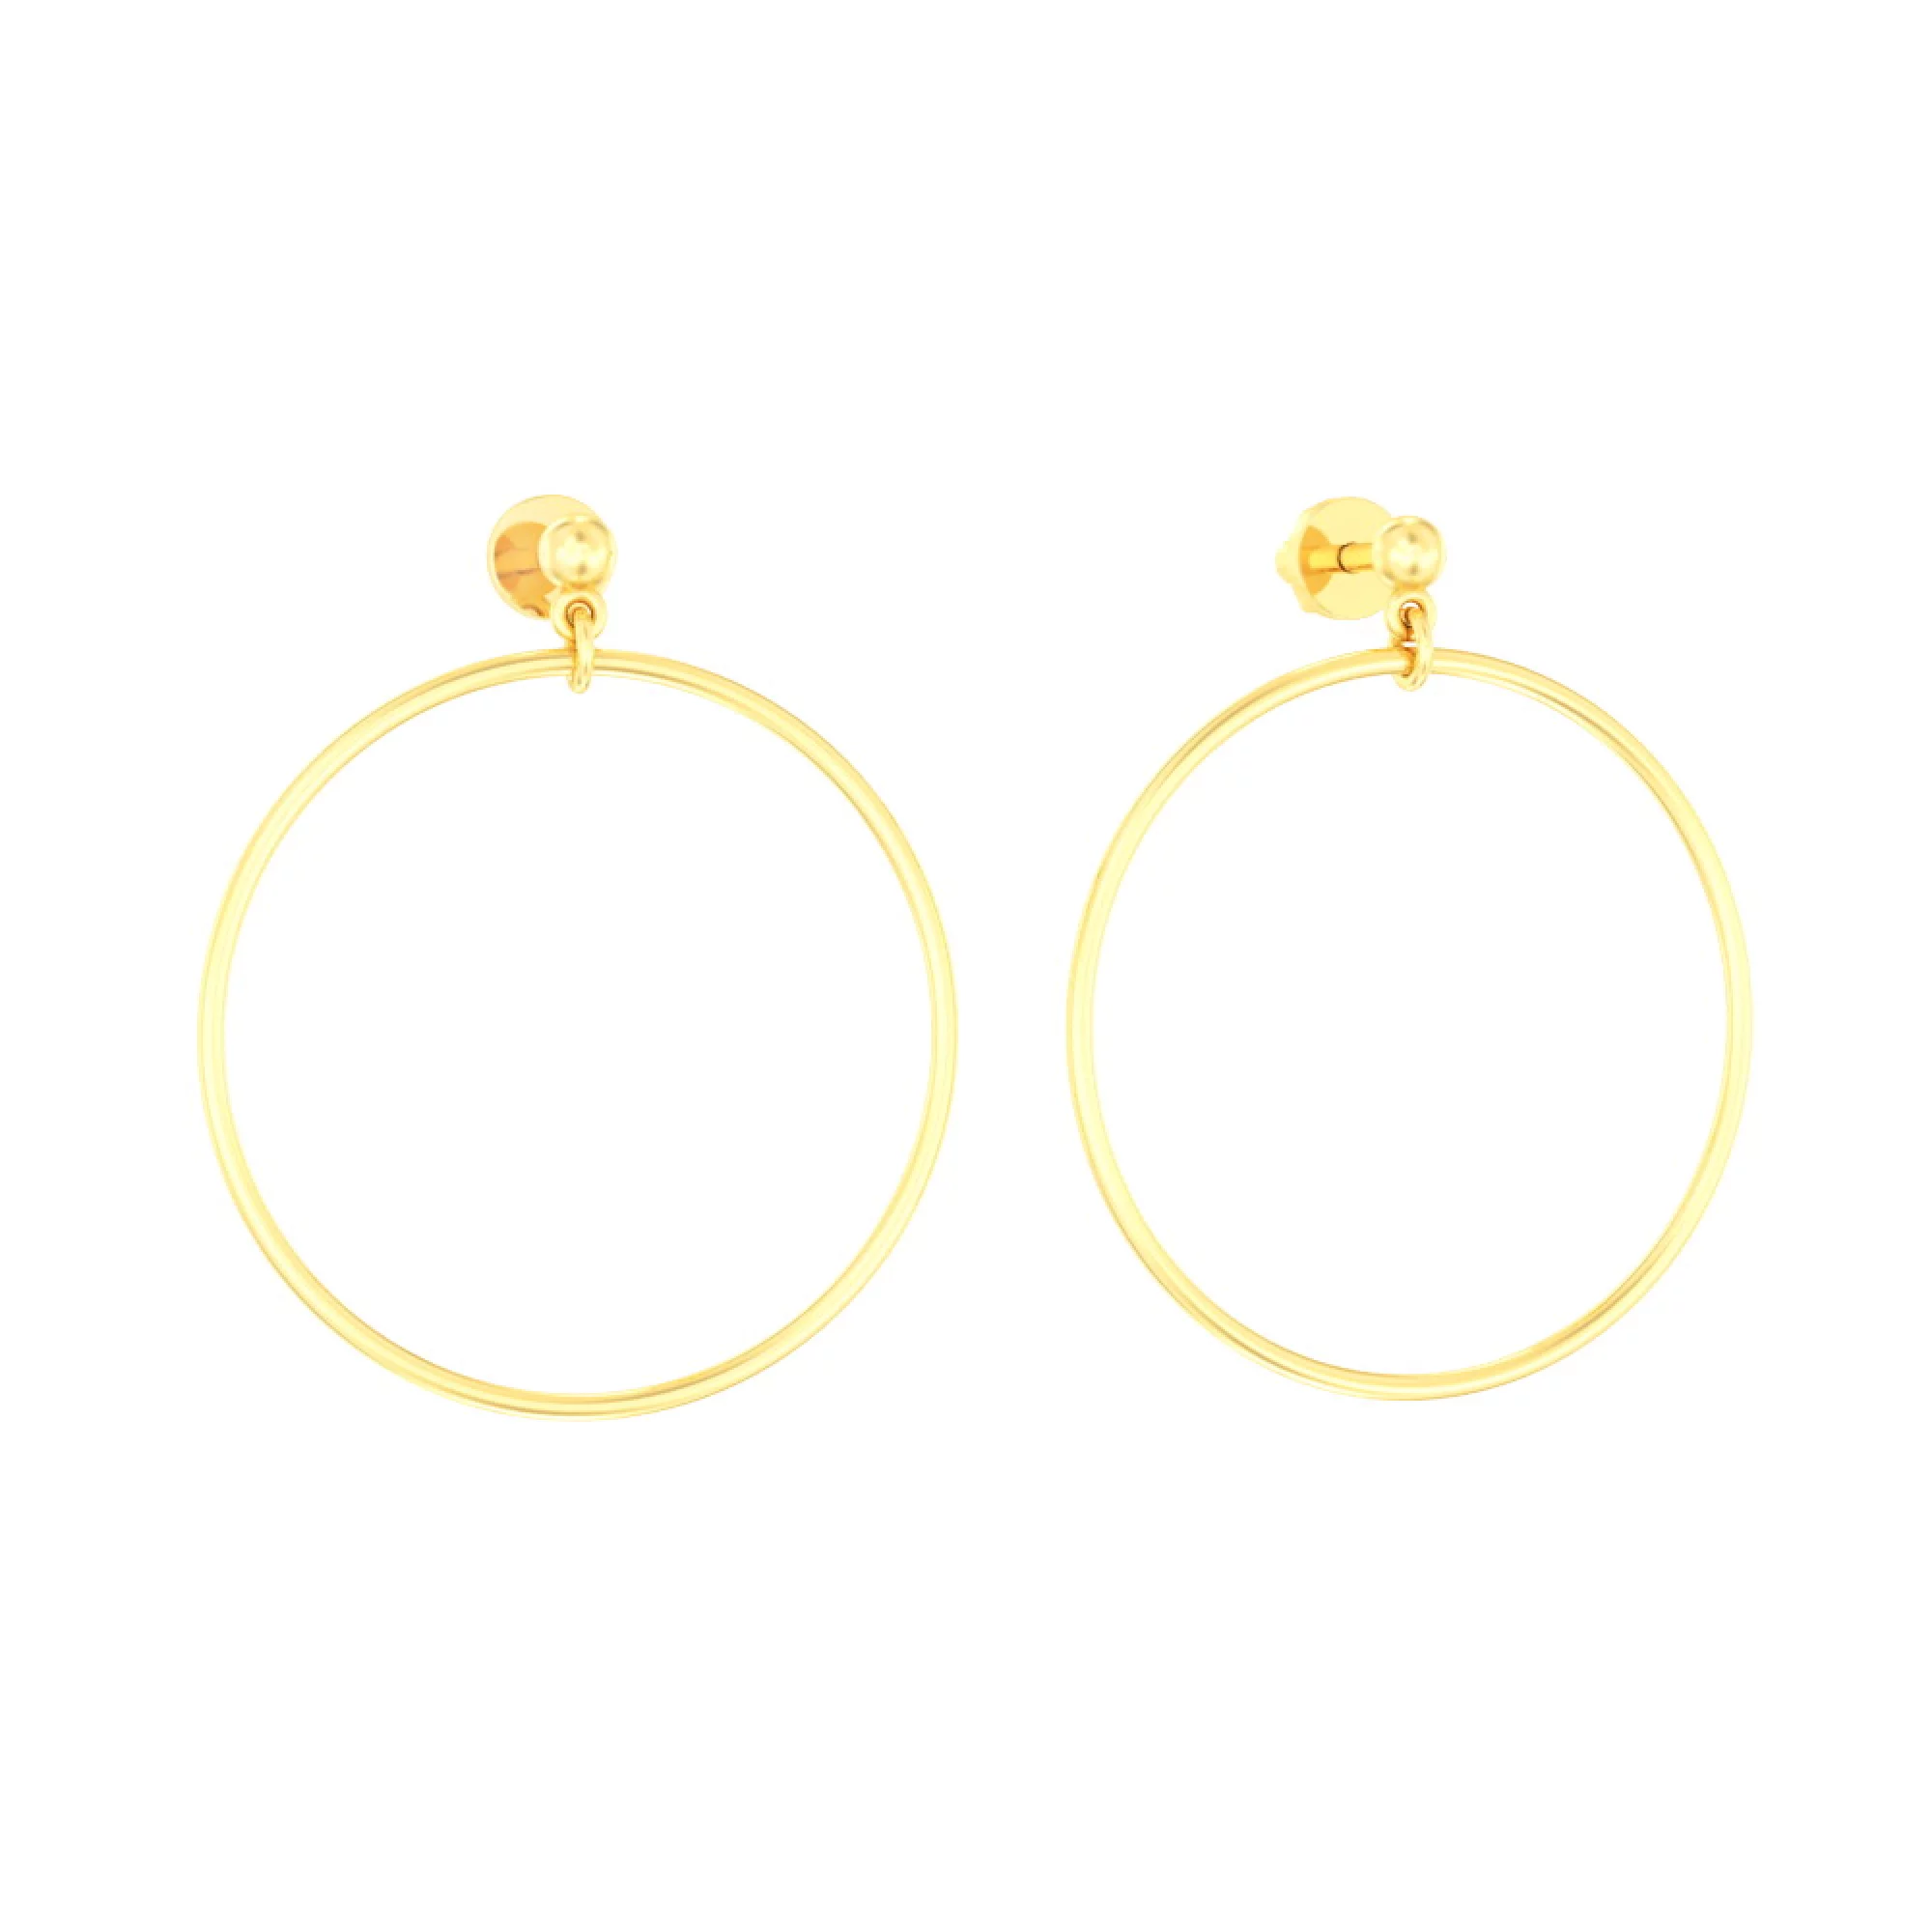 Сережки-гвоздики из лимонного золота с подвесами "Кольца" - 972009 – изображение 1